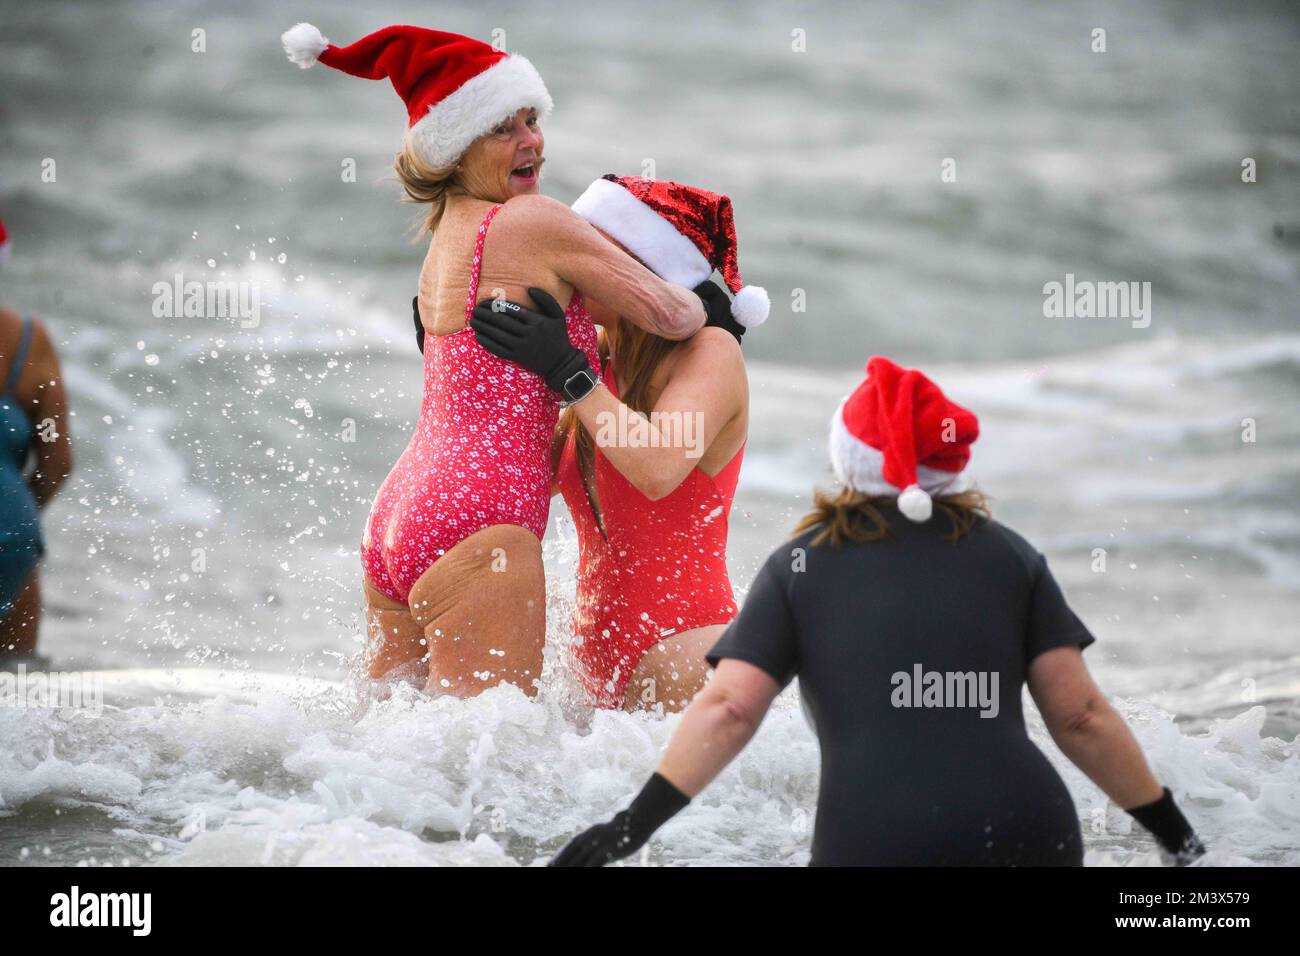 Les amateurs de fonds bravent les eaux glaciales de la baie de Langland, Swansea, lors de l'événement annuel de Santa Surf qui a lieu à la plage de Gower chaque année pour recueillir de l'argent pour les surfeurs contre Sewerage et aider les surfeurs locaux à entrer dans l'esprit de Noël. Banque D'Images